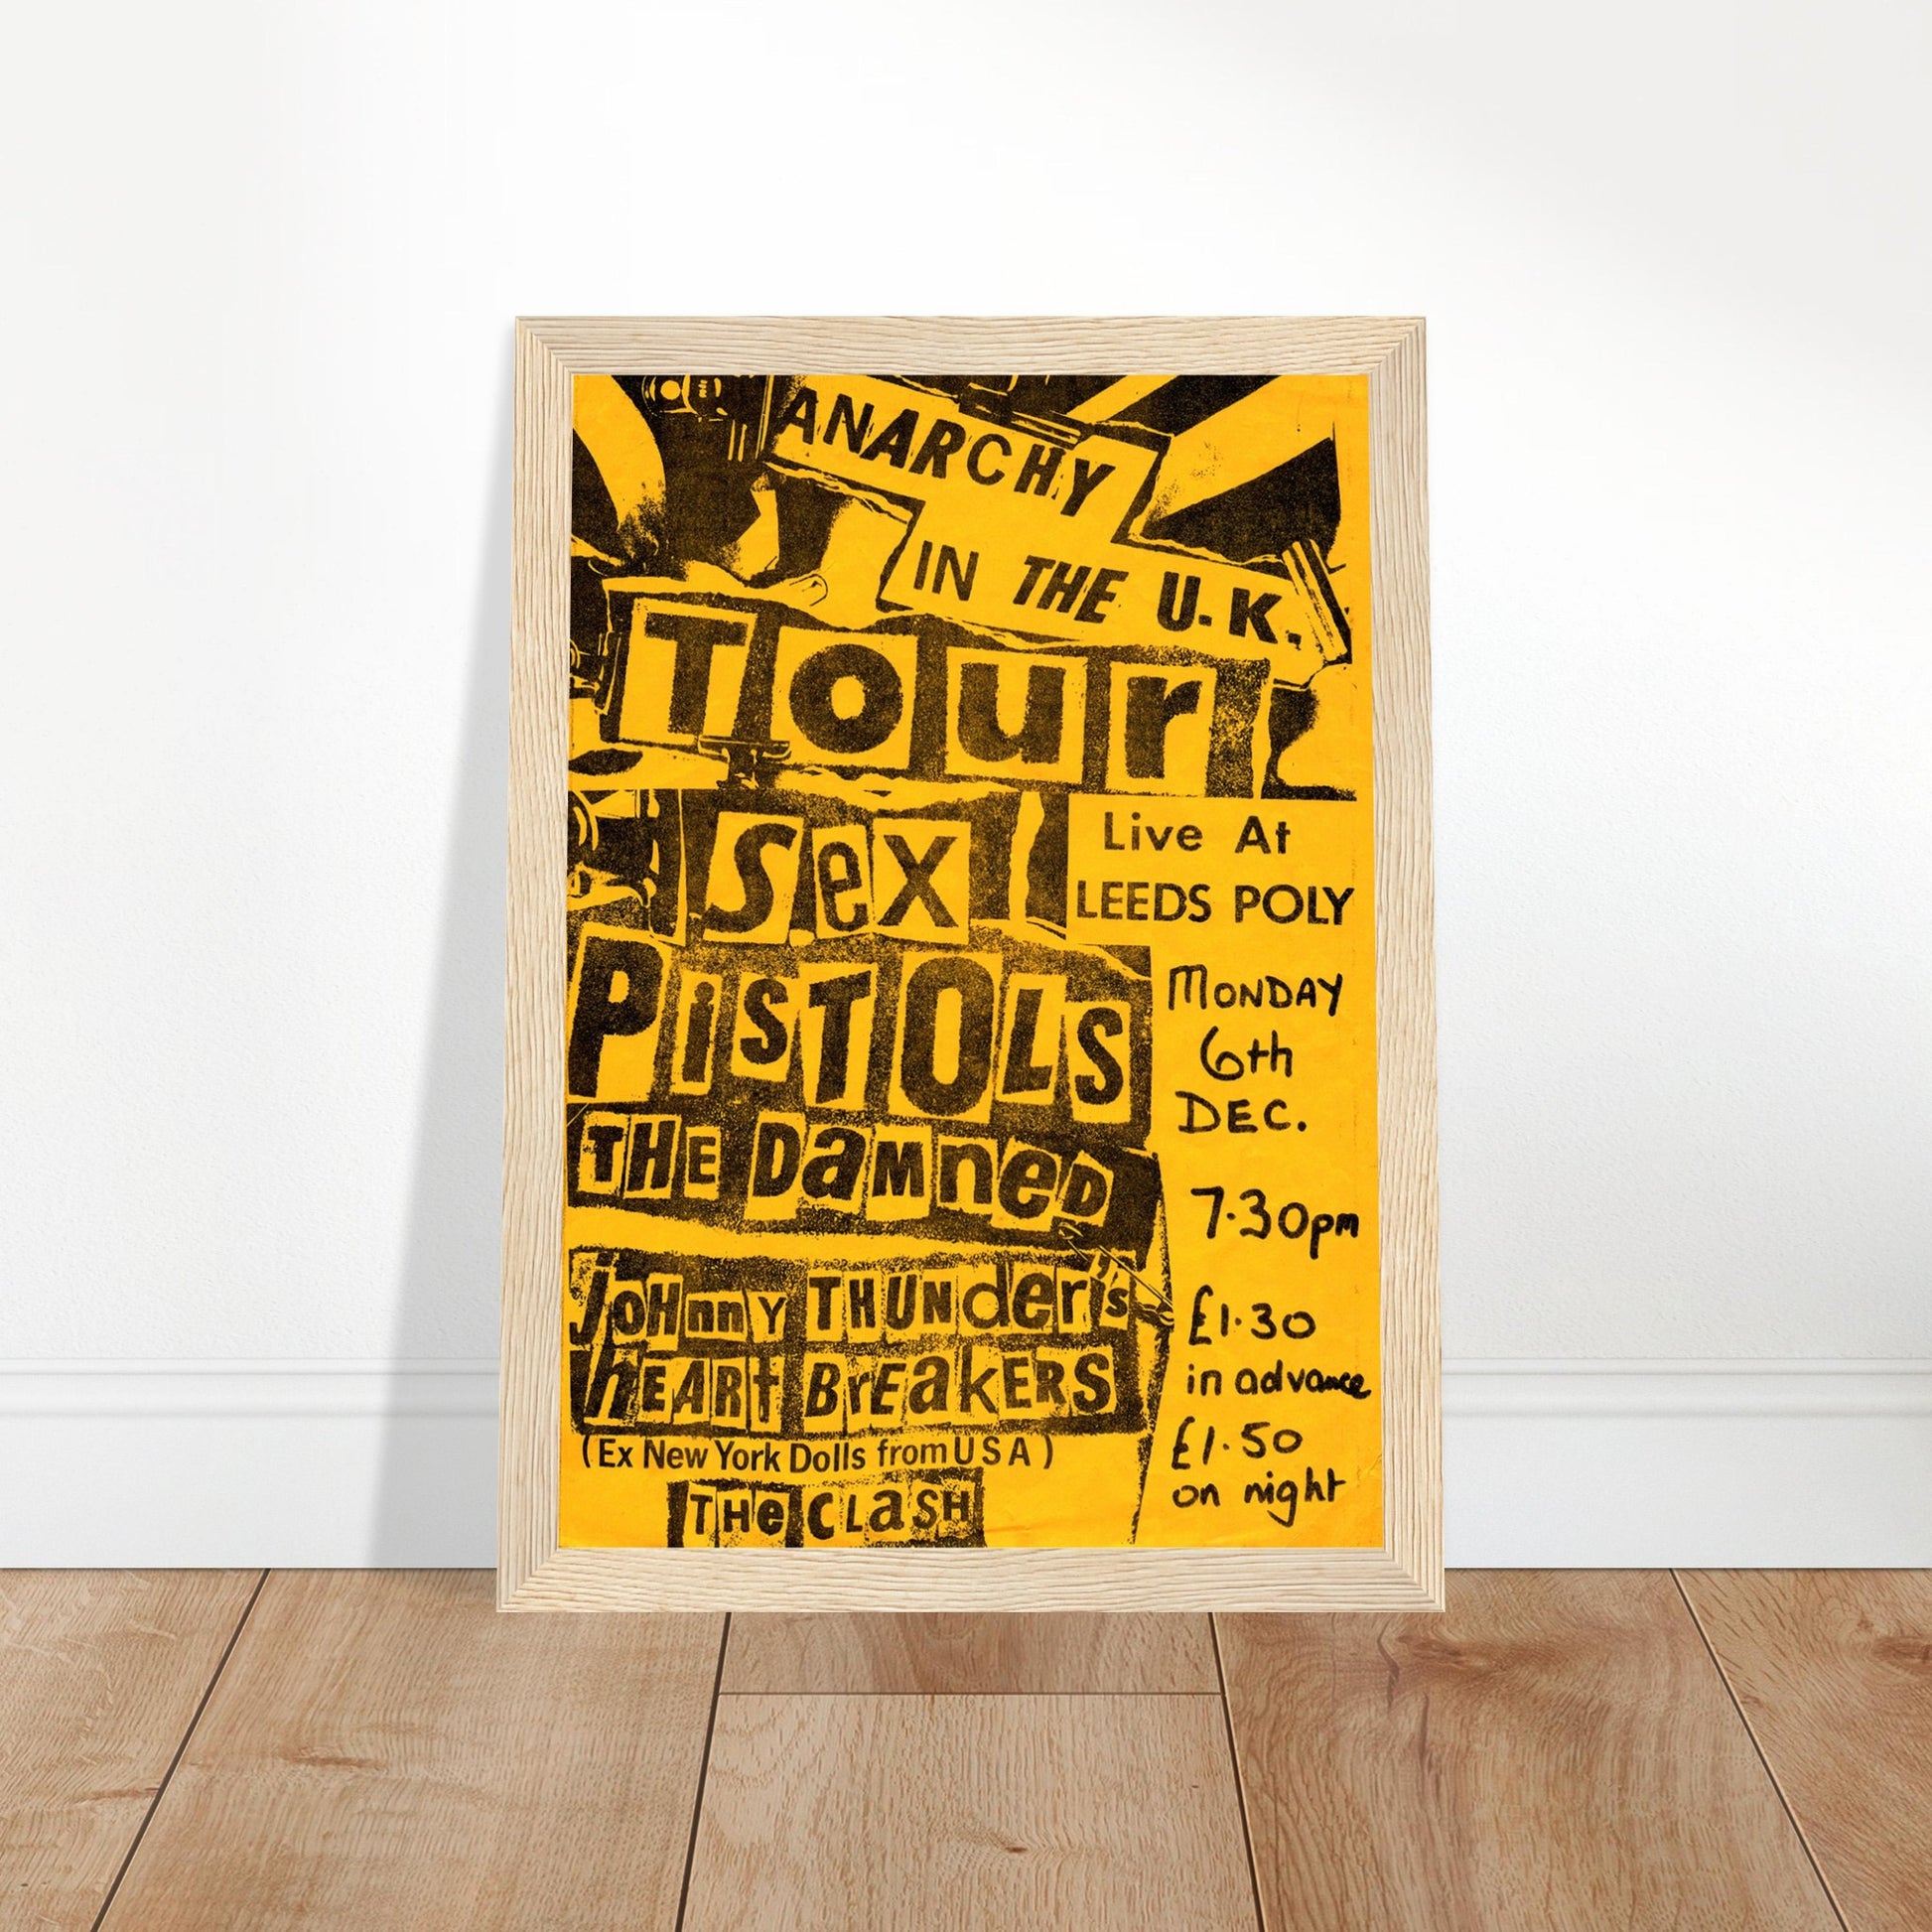 The Clash Vintage Poster Reprint on Premium Matte Paper - Posterify